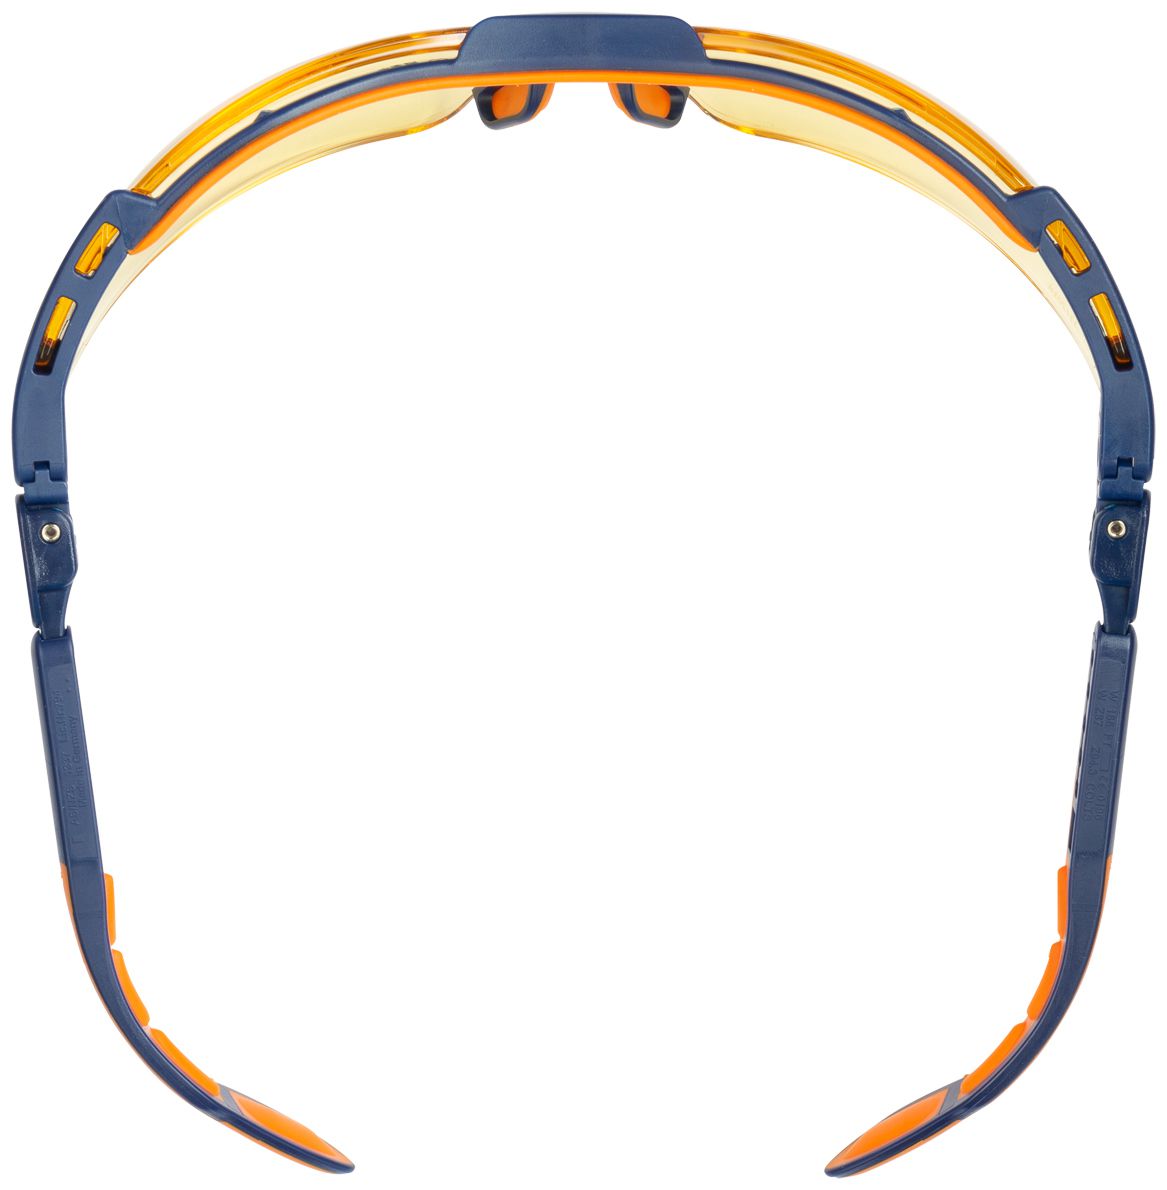 uvex i-vo 9160 Schutzbrille - kratz- & beschlagfeste Modelle in verschiedenen Farben - EN 166/170/172